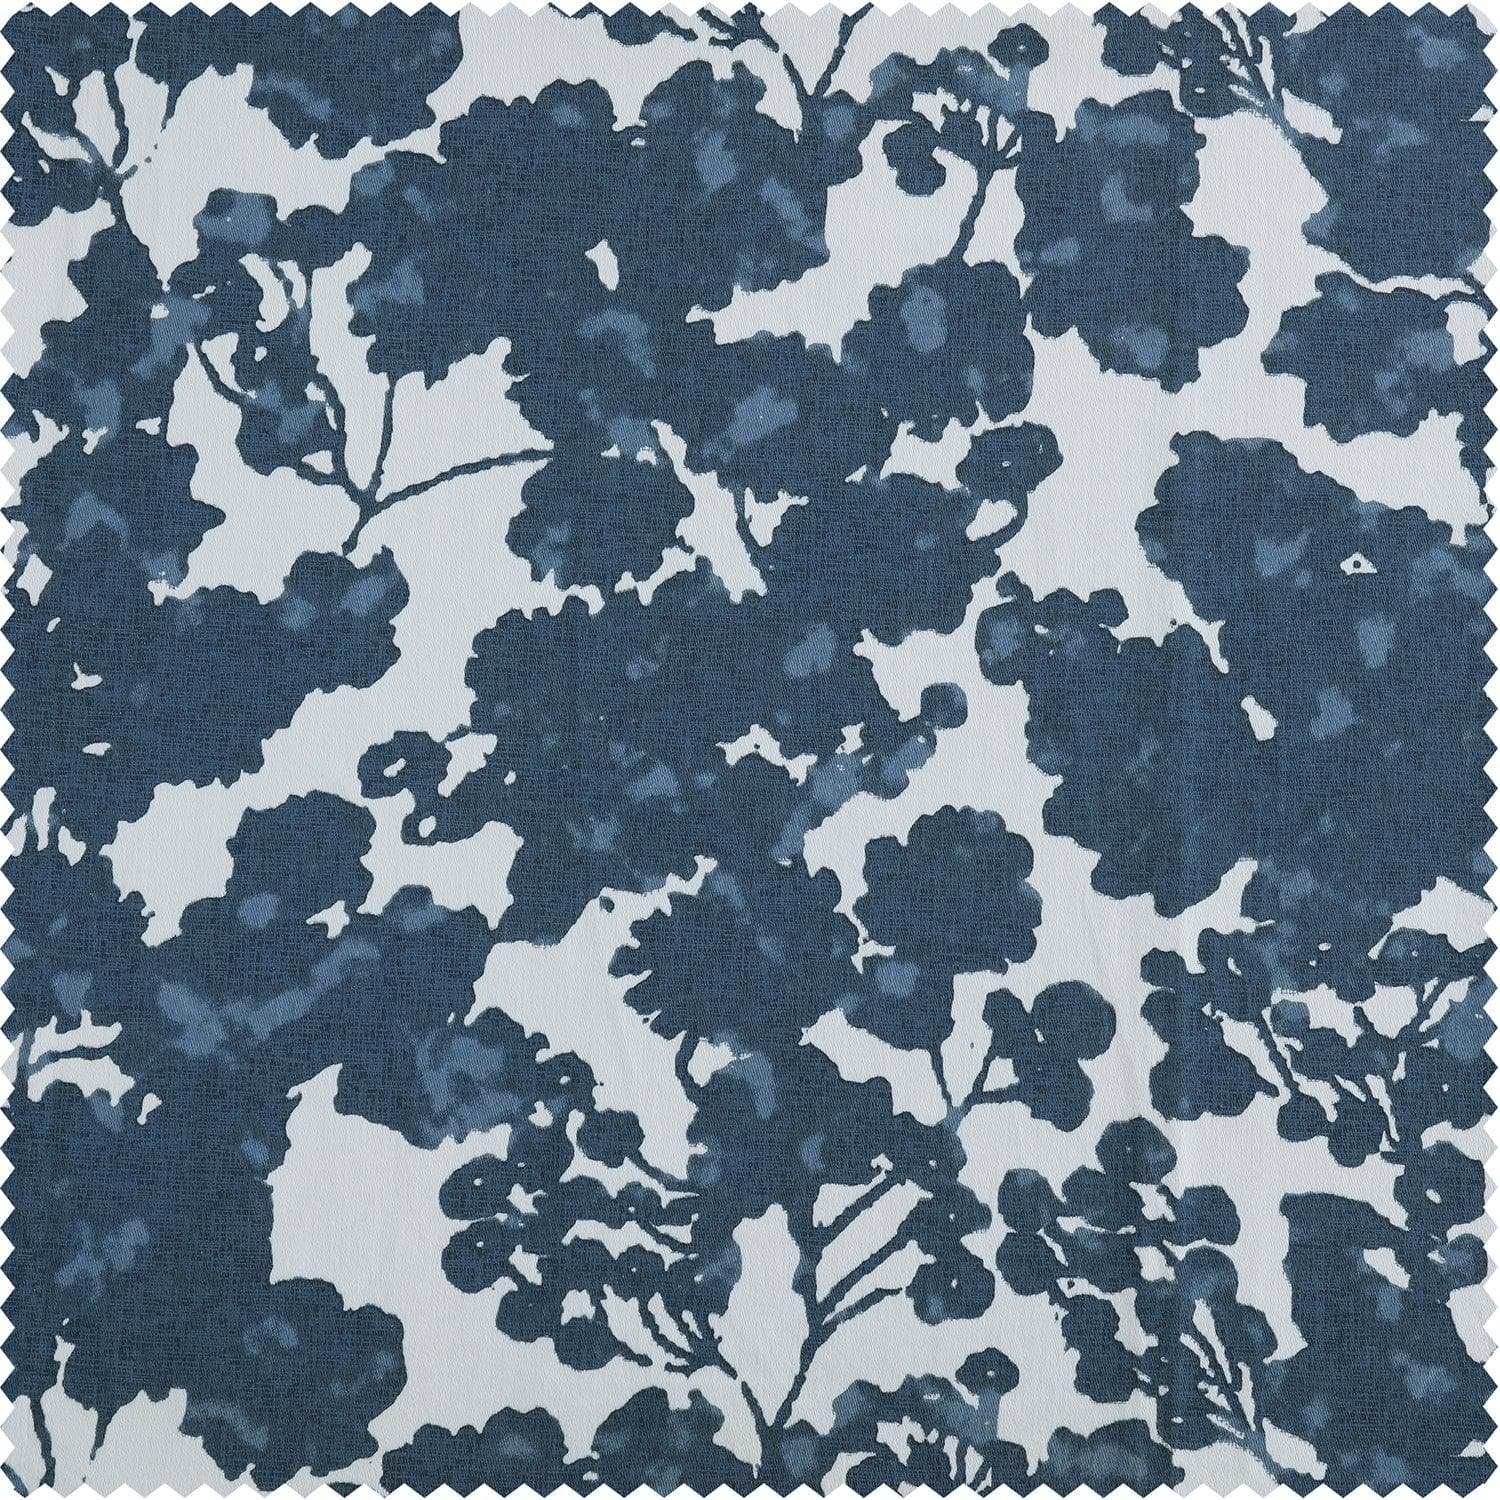 Fleur Blue Printed Cotton Cushion Covers - Pair